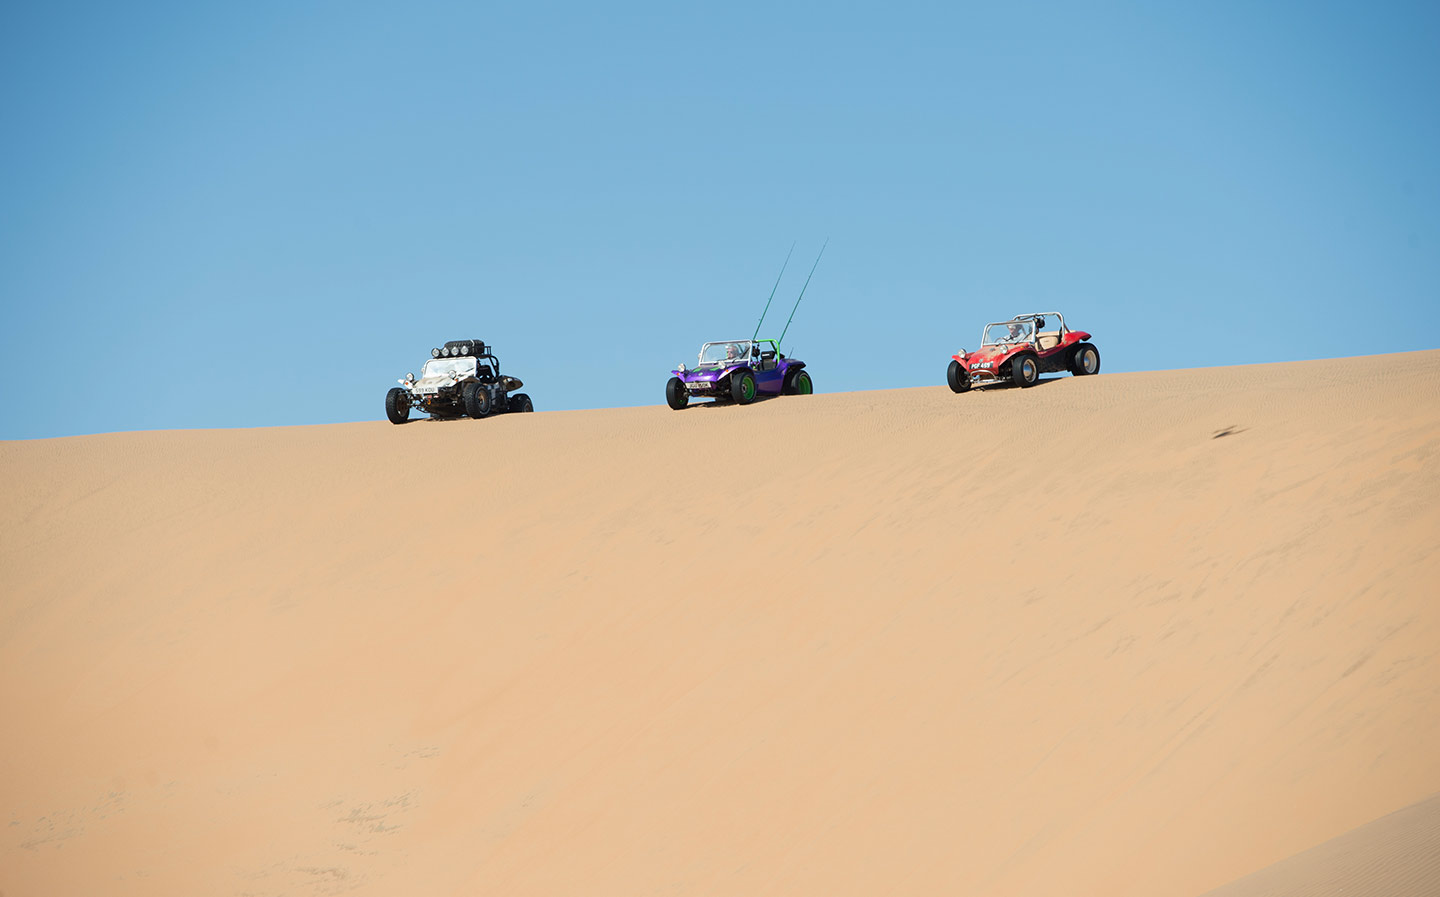 Гранд тур sand job. Grand Tour Namibia. Top Gear Намибия. Grand Tour Beach Buggy. Гранд тур на багги в пустыне.